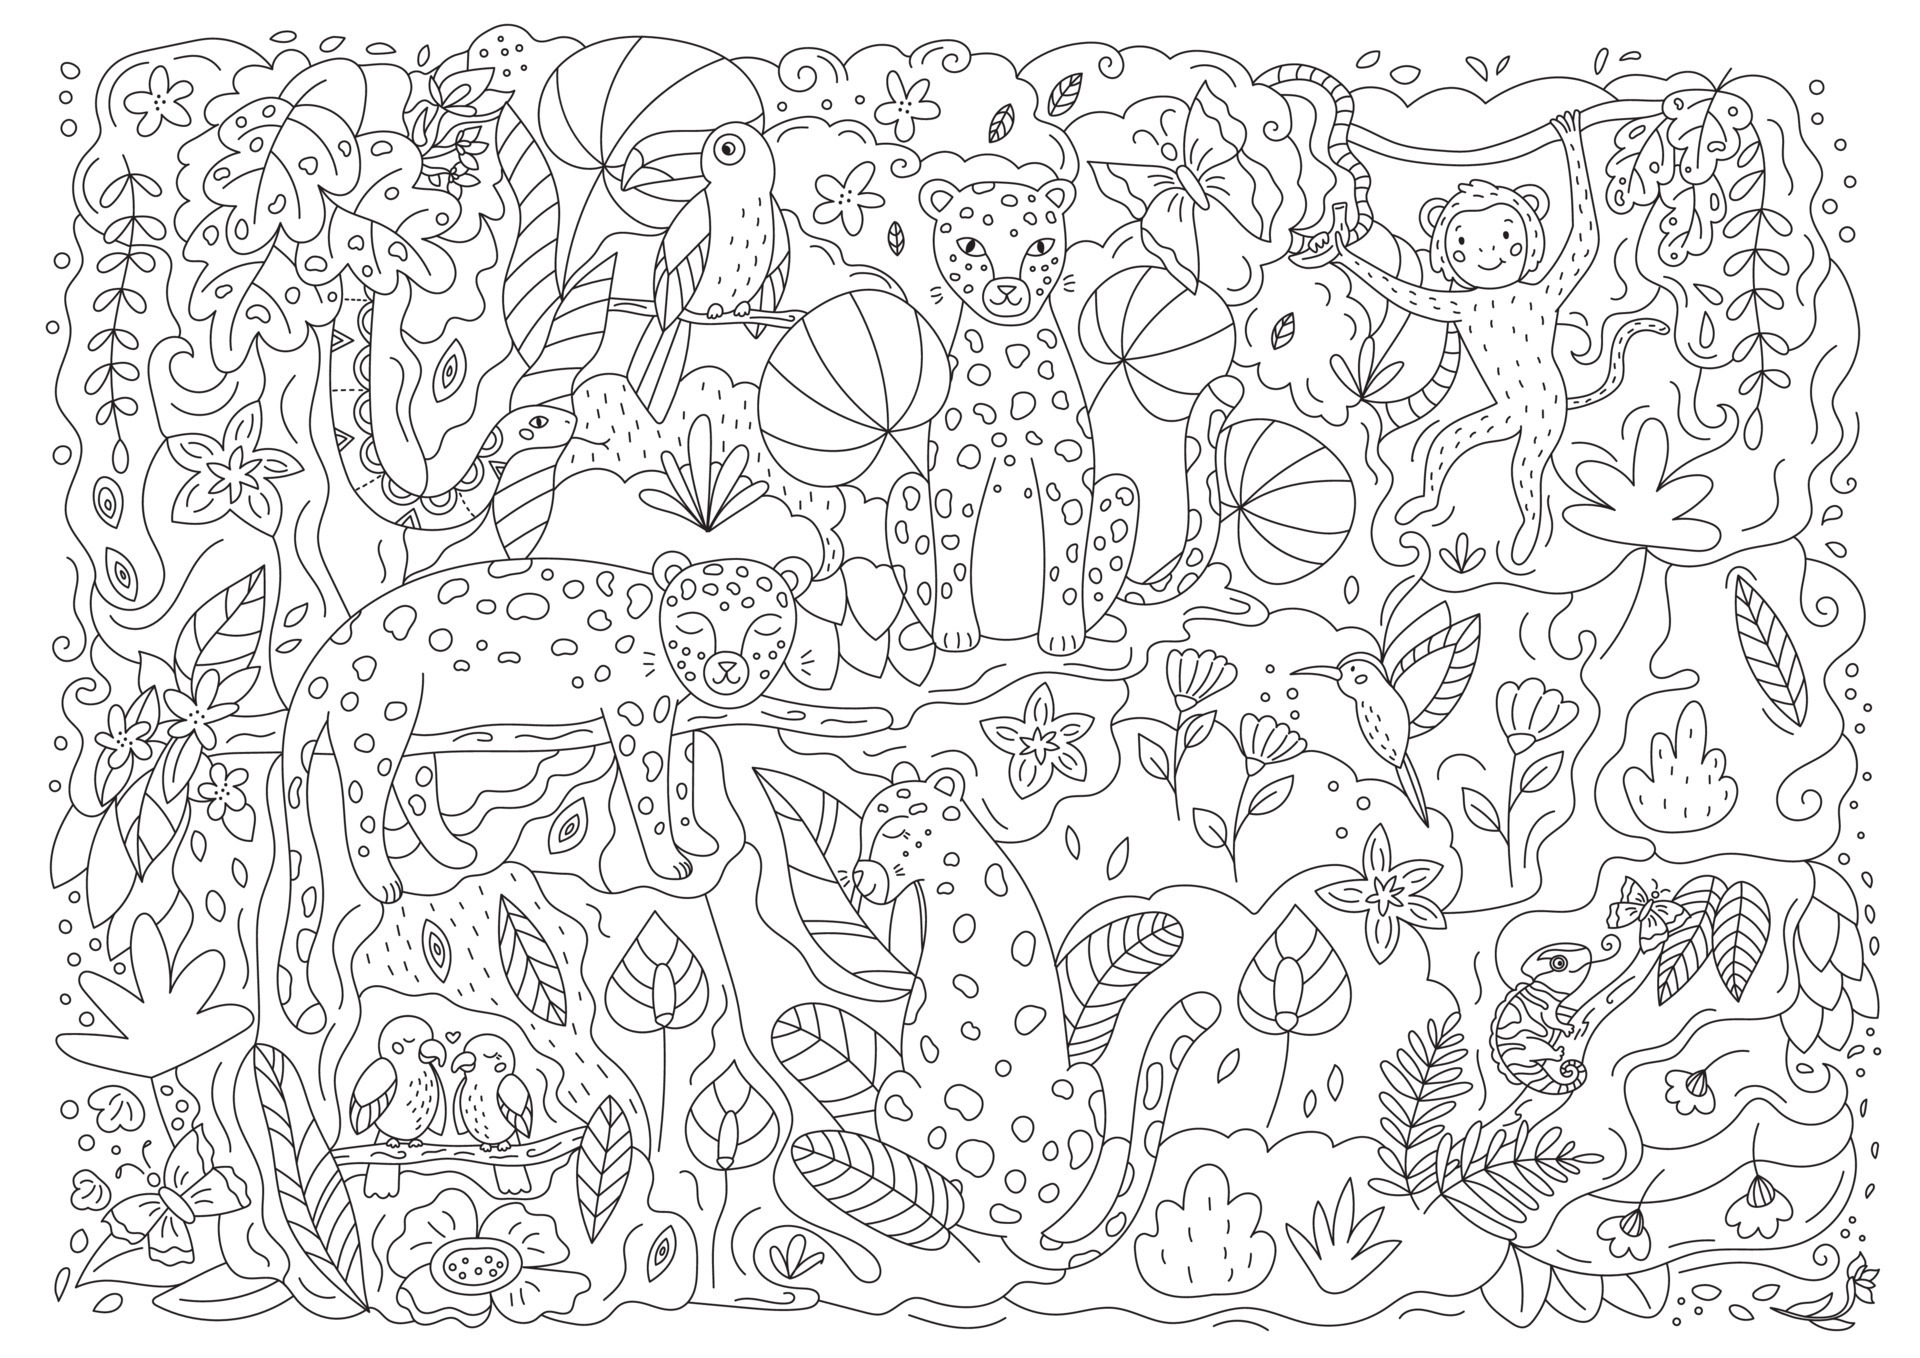 Desenho de Camaleão para colorir  Desenhos para colorir e imprimir gratis